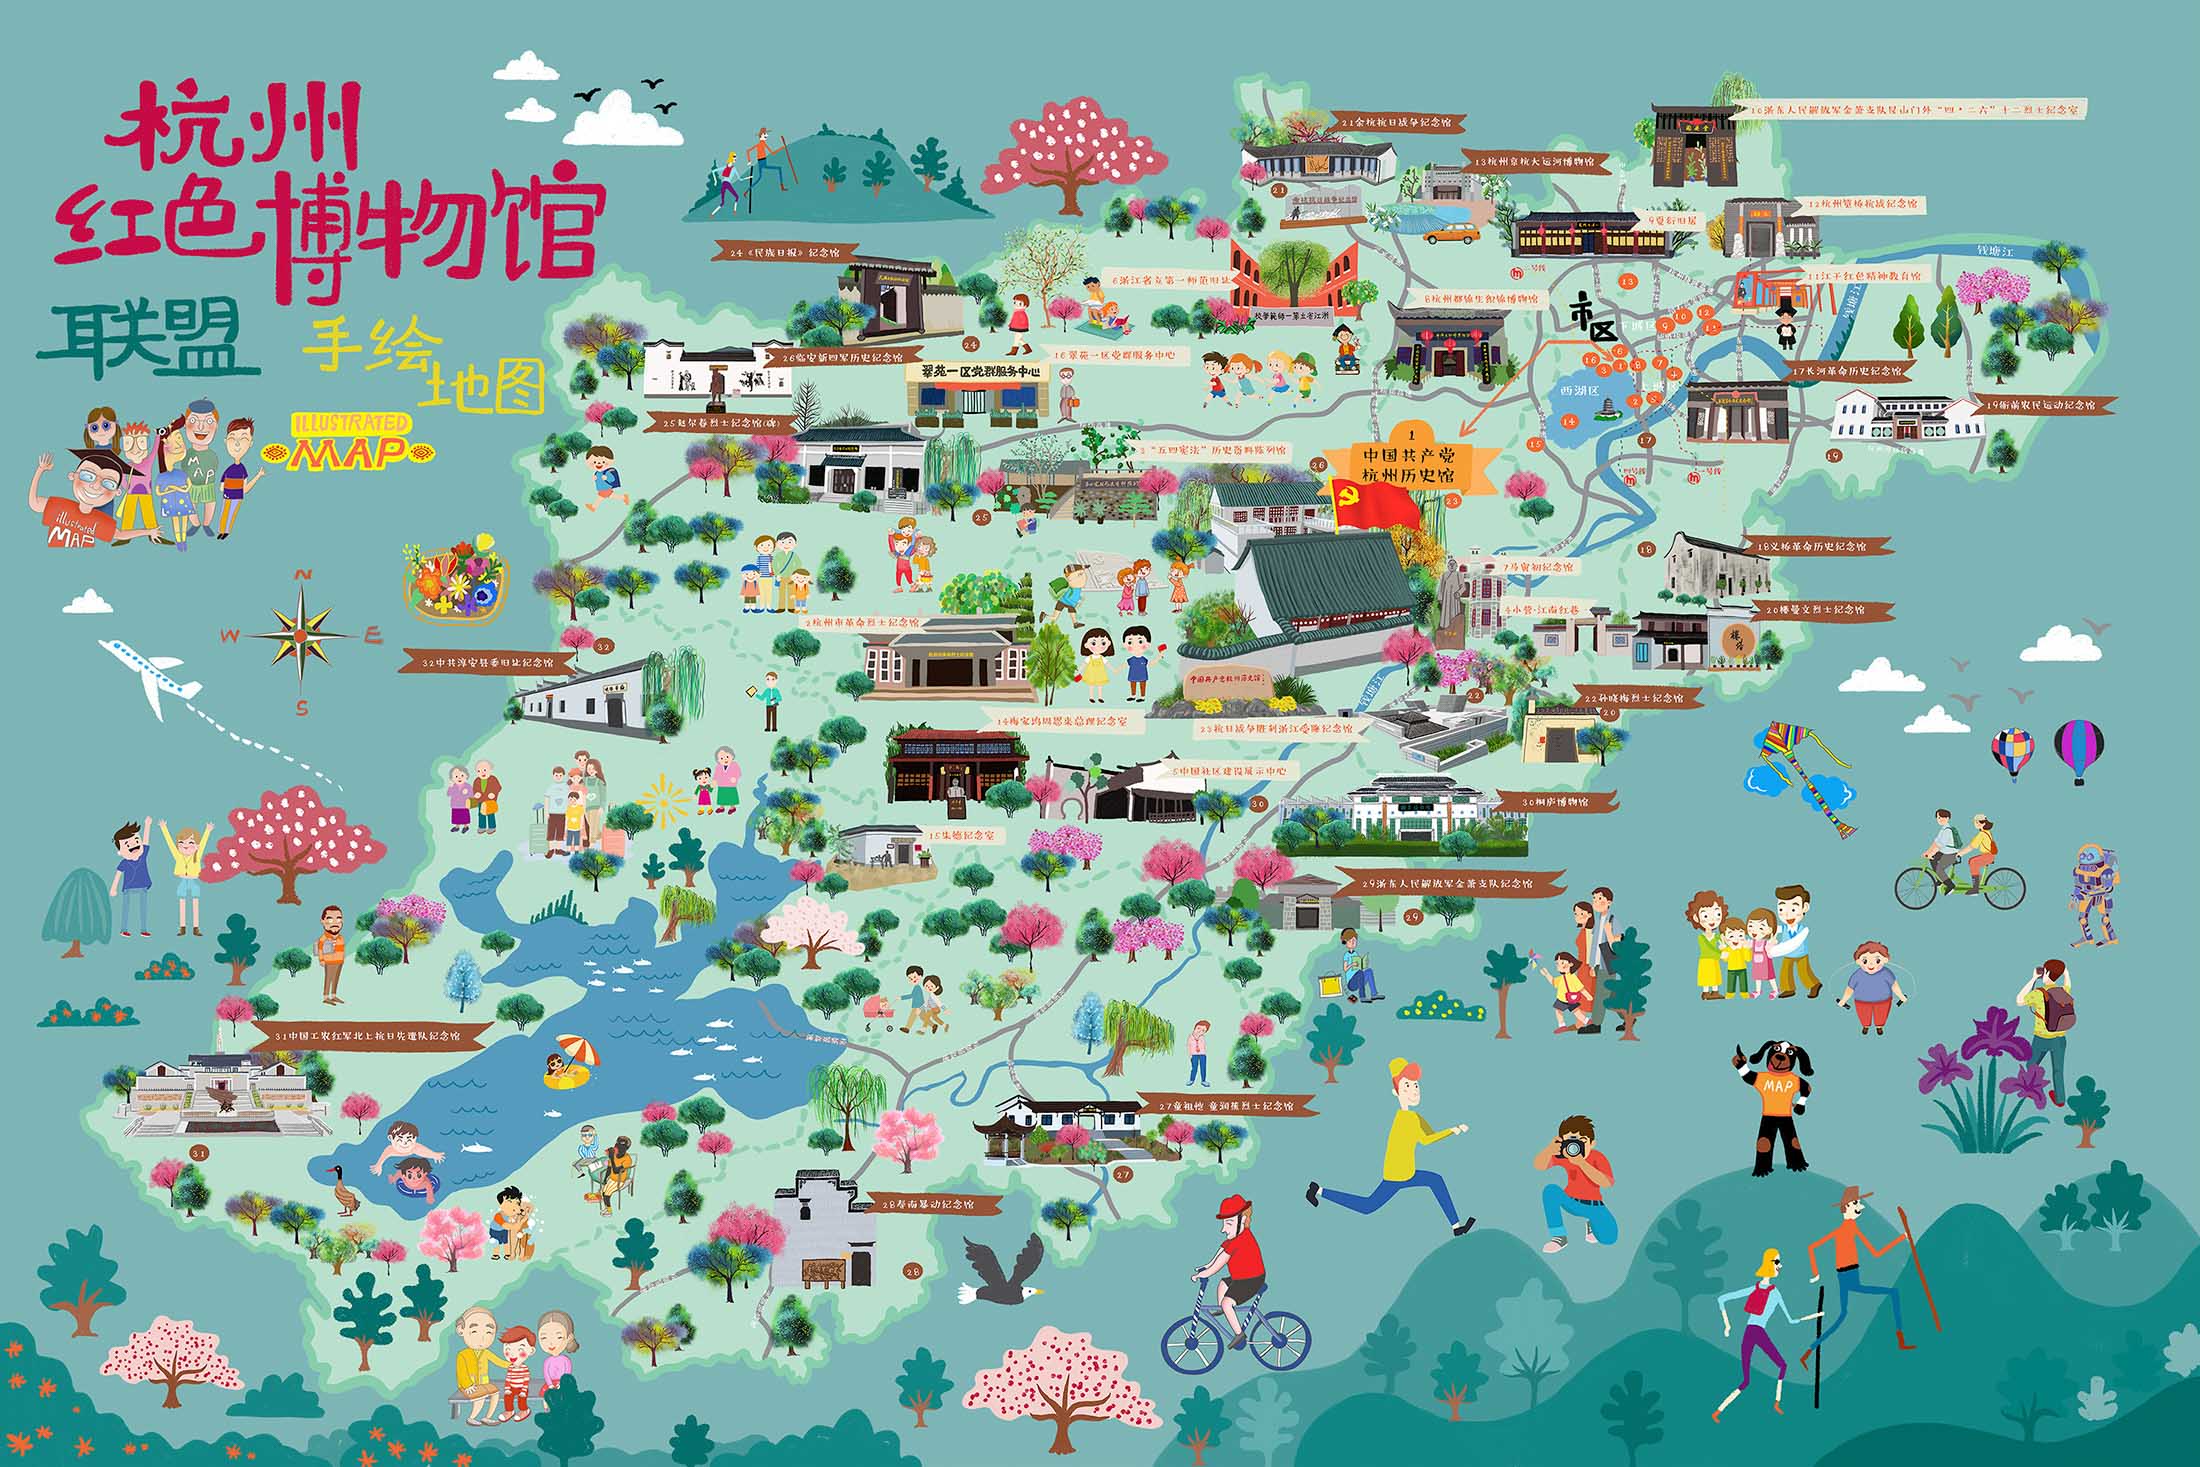 毛阳镇手绘地图与科技的完美结合 